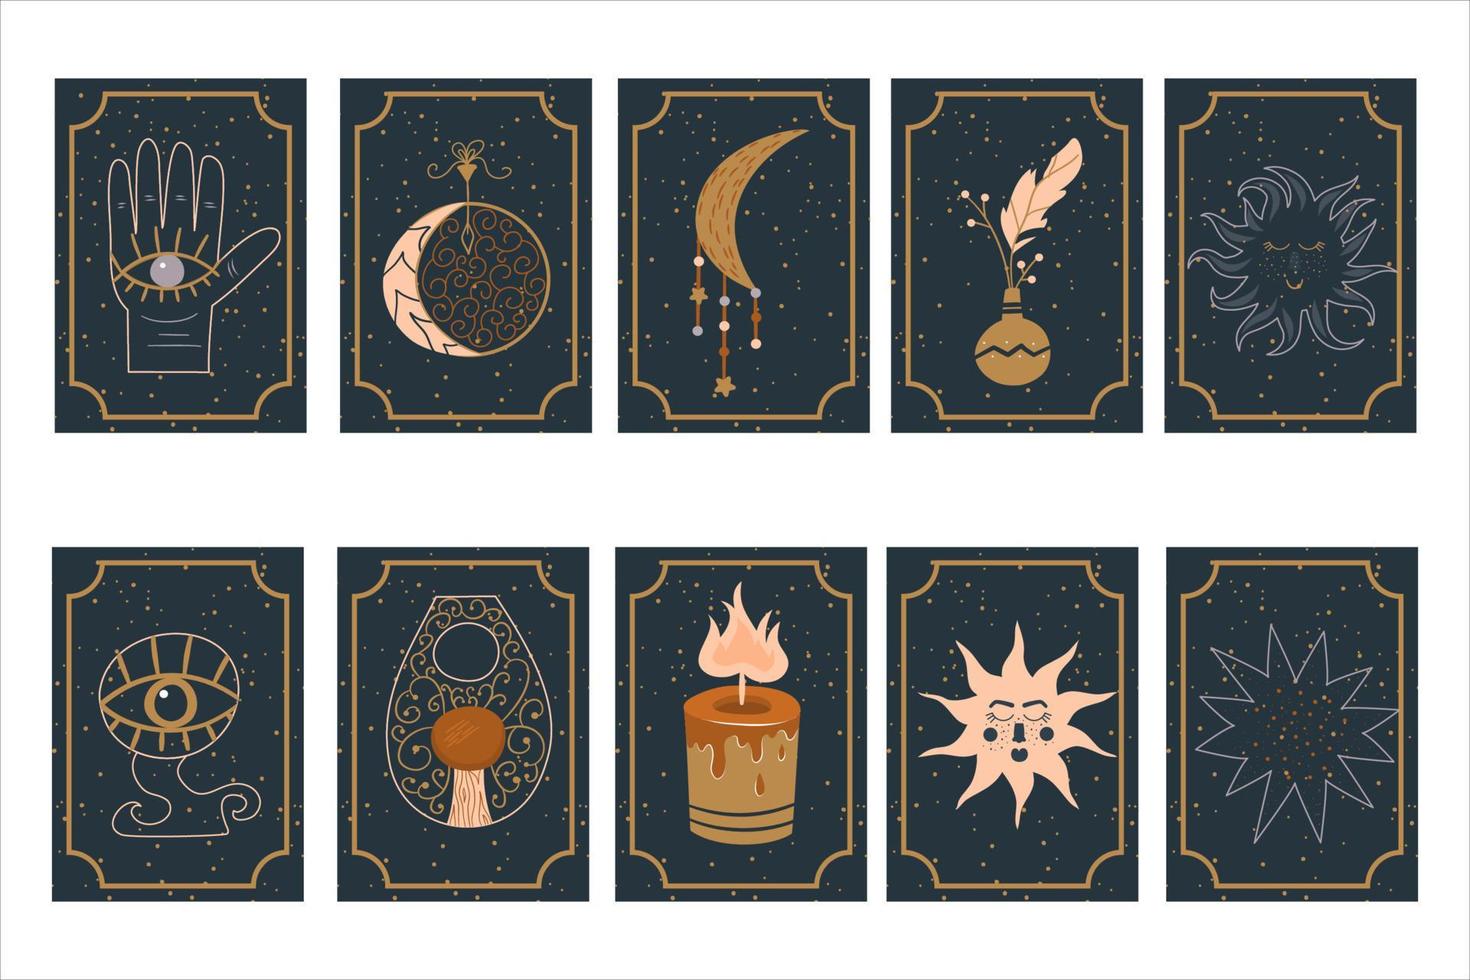 mystieke astrologie zet magische kaarten op sterrenhemel achtergrond esoterische objecten en symbolen.maan en zon, talismannen, amuletten en een hand voor helderziendheid van de toekomst. vectorillustratie in een vlakke stijl vector